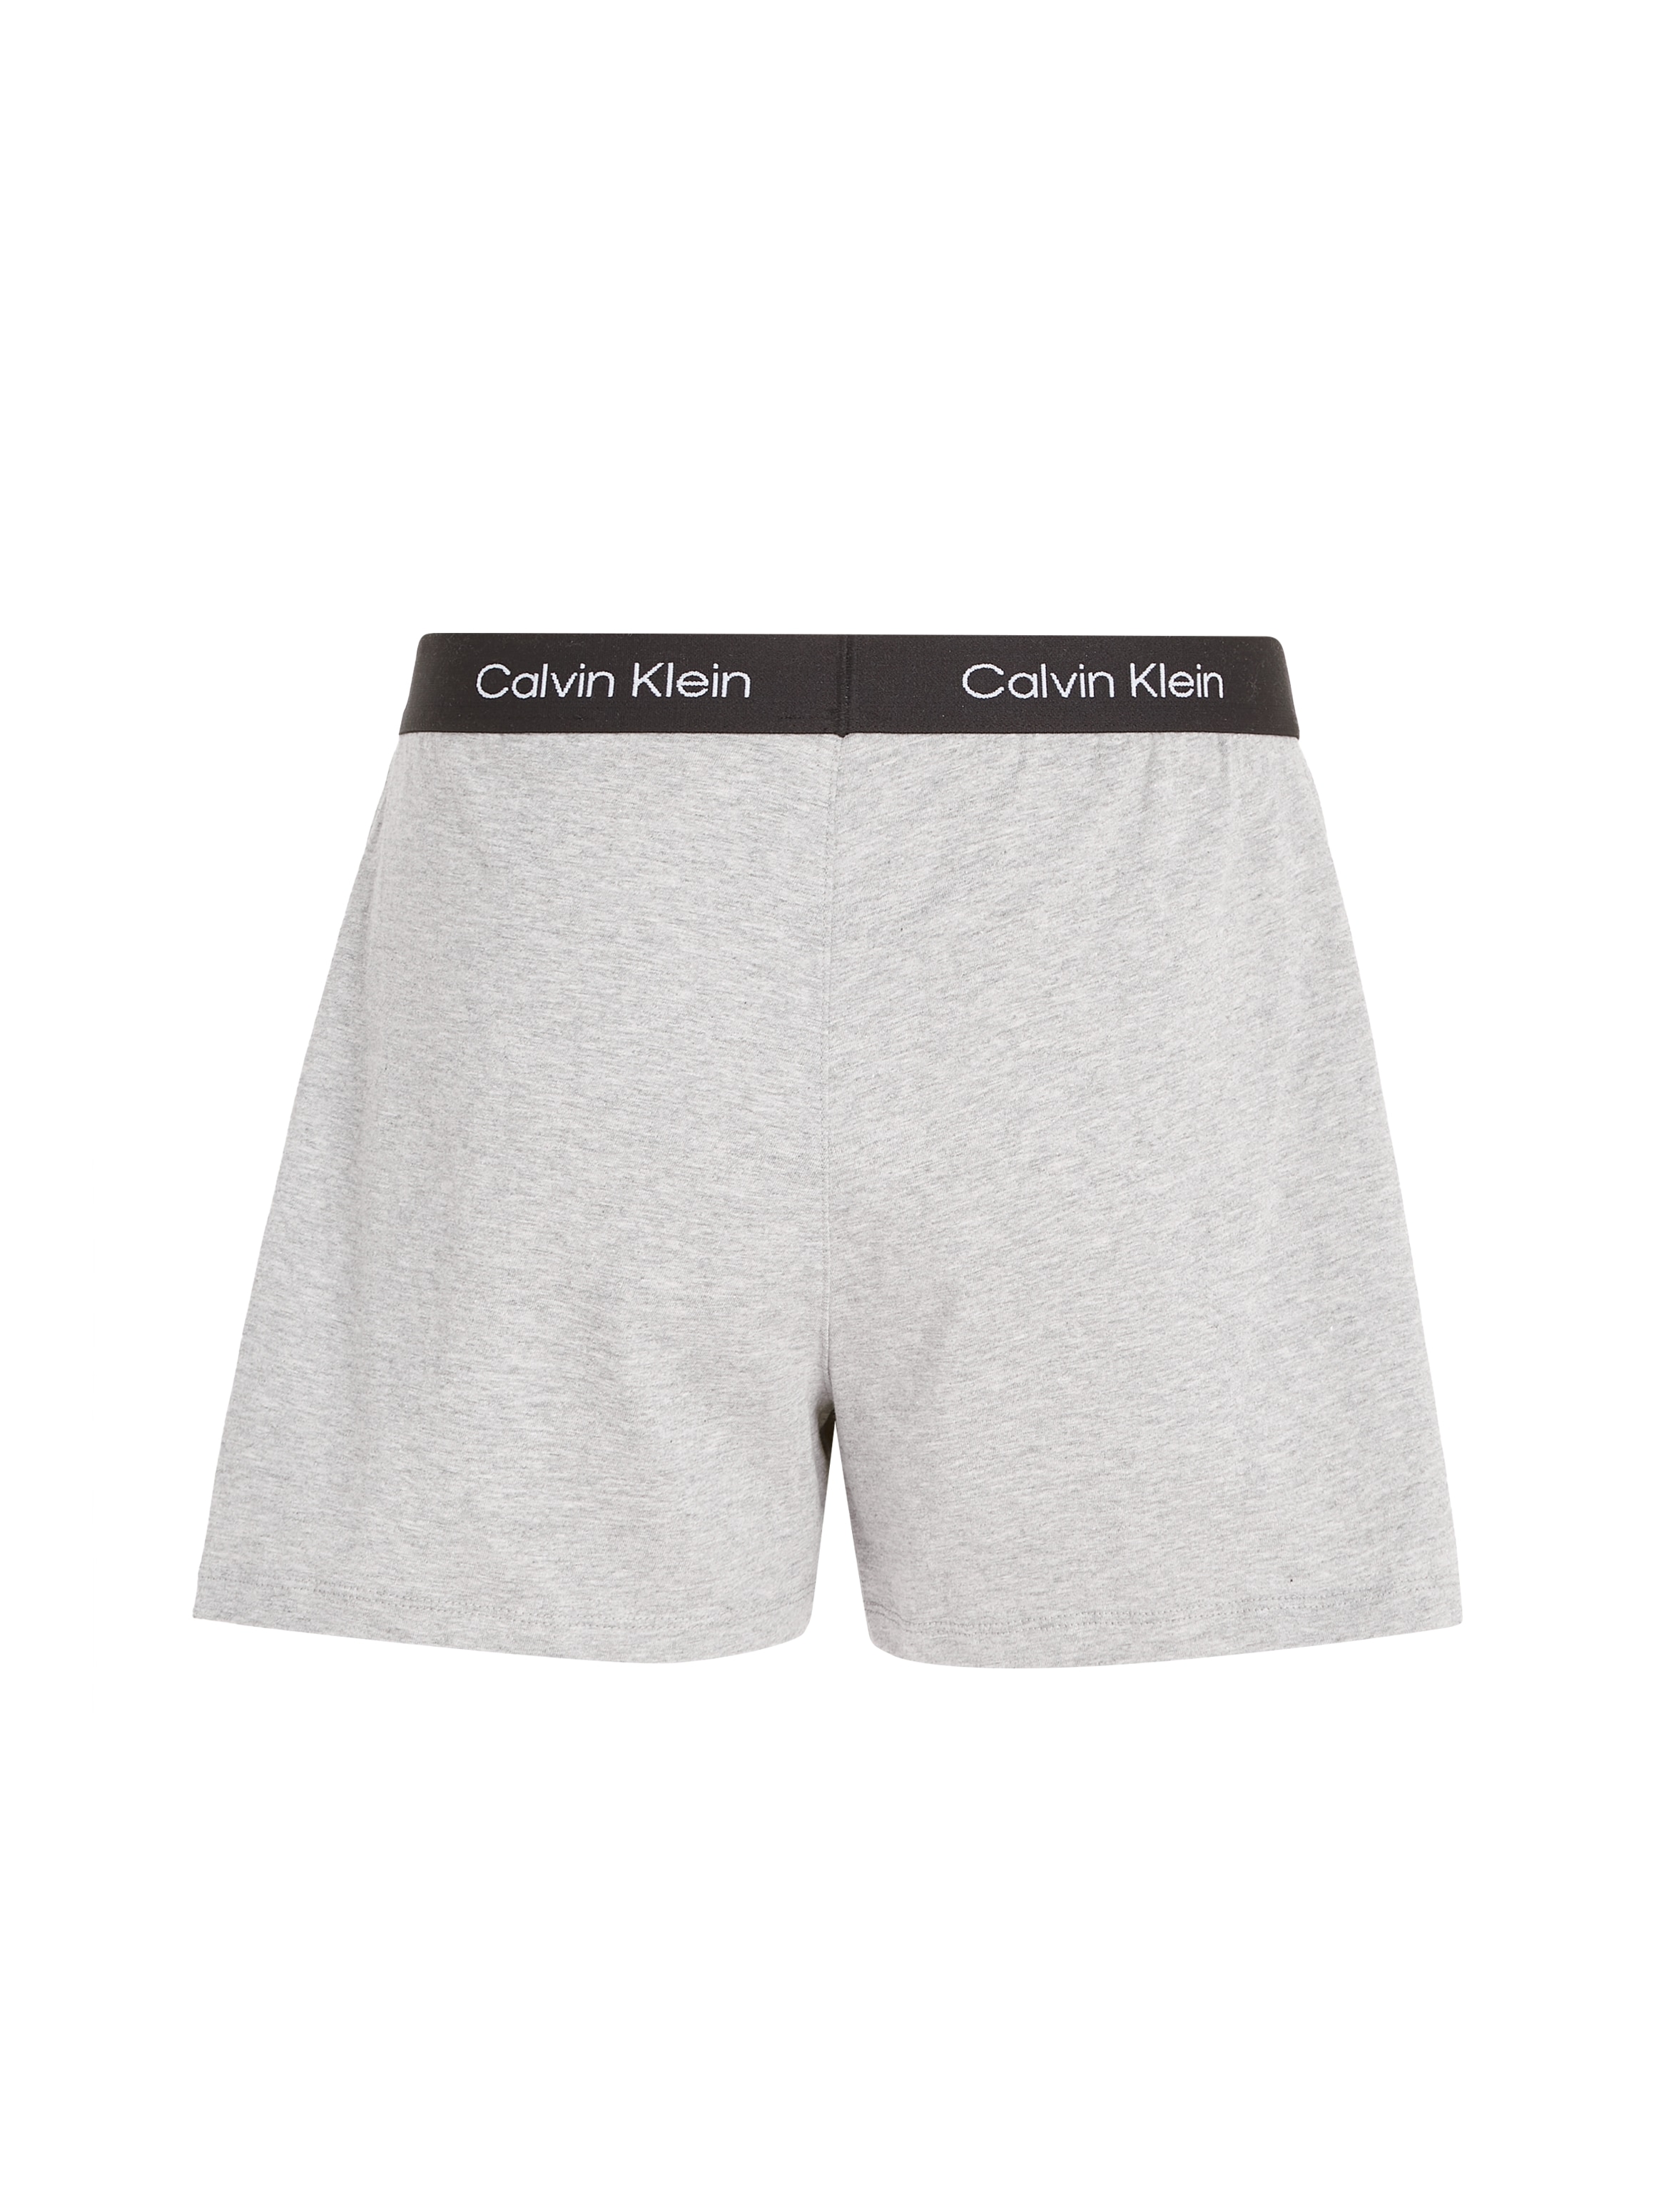 Calvin Klein Schlafshorts Wäsche Logobund auf mit & Rechnung SHORT«, »SLEEP bestellen klassischem